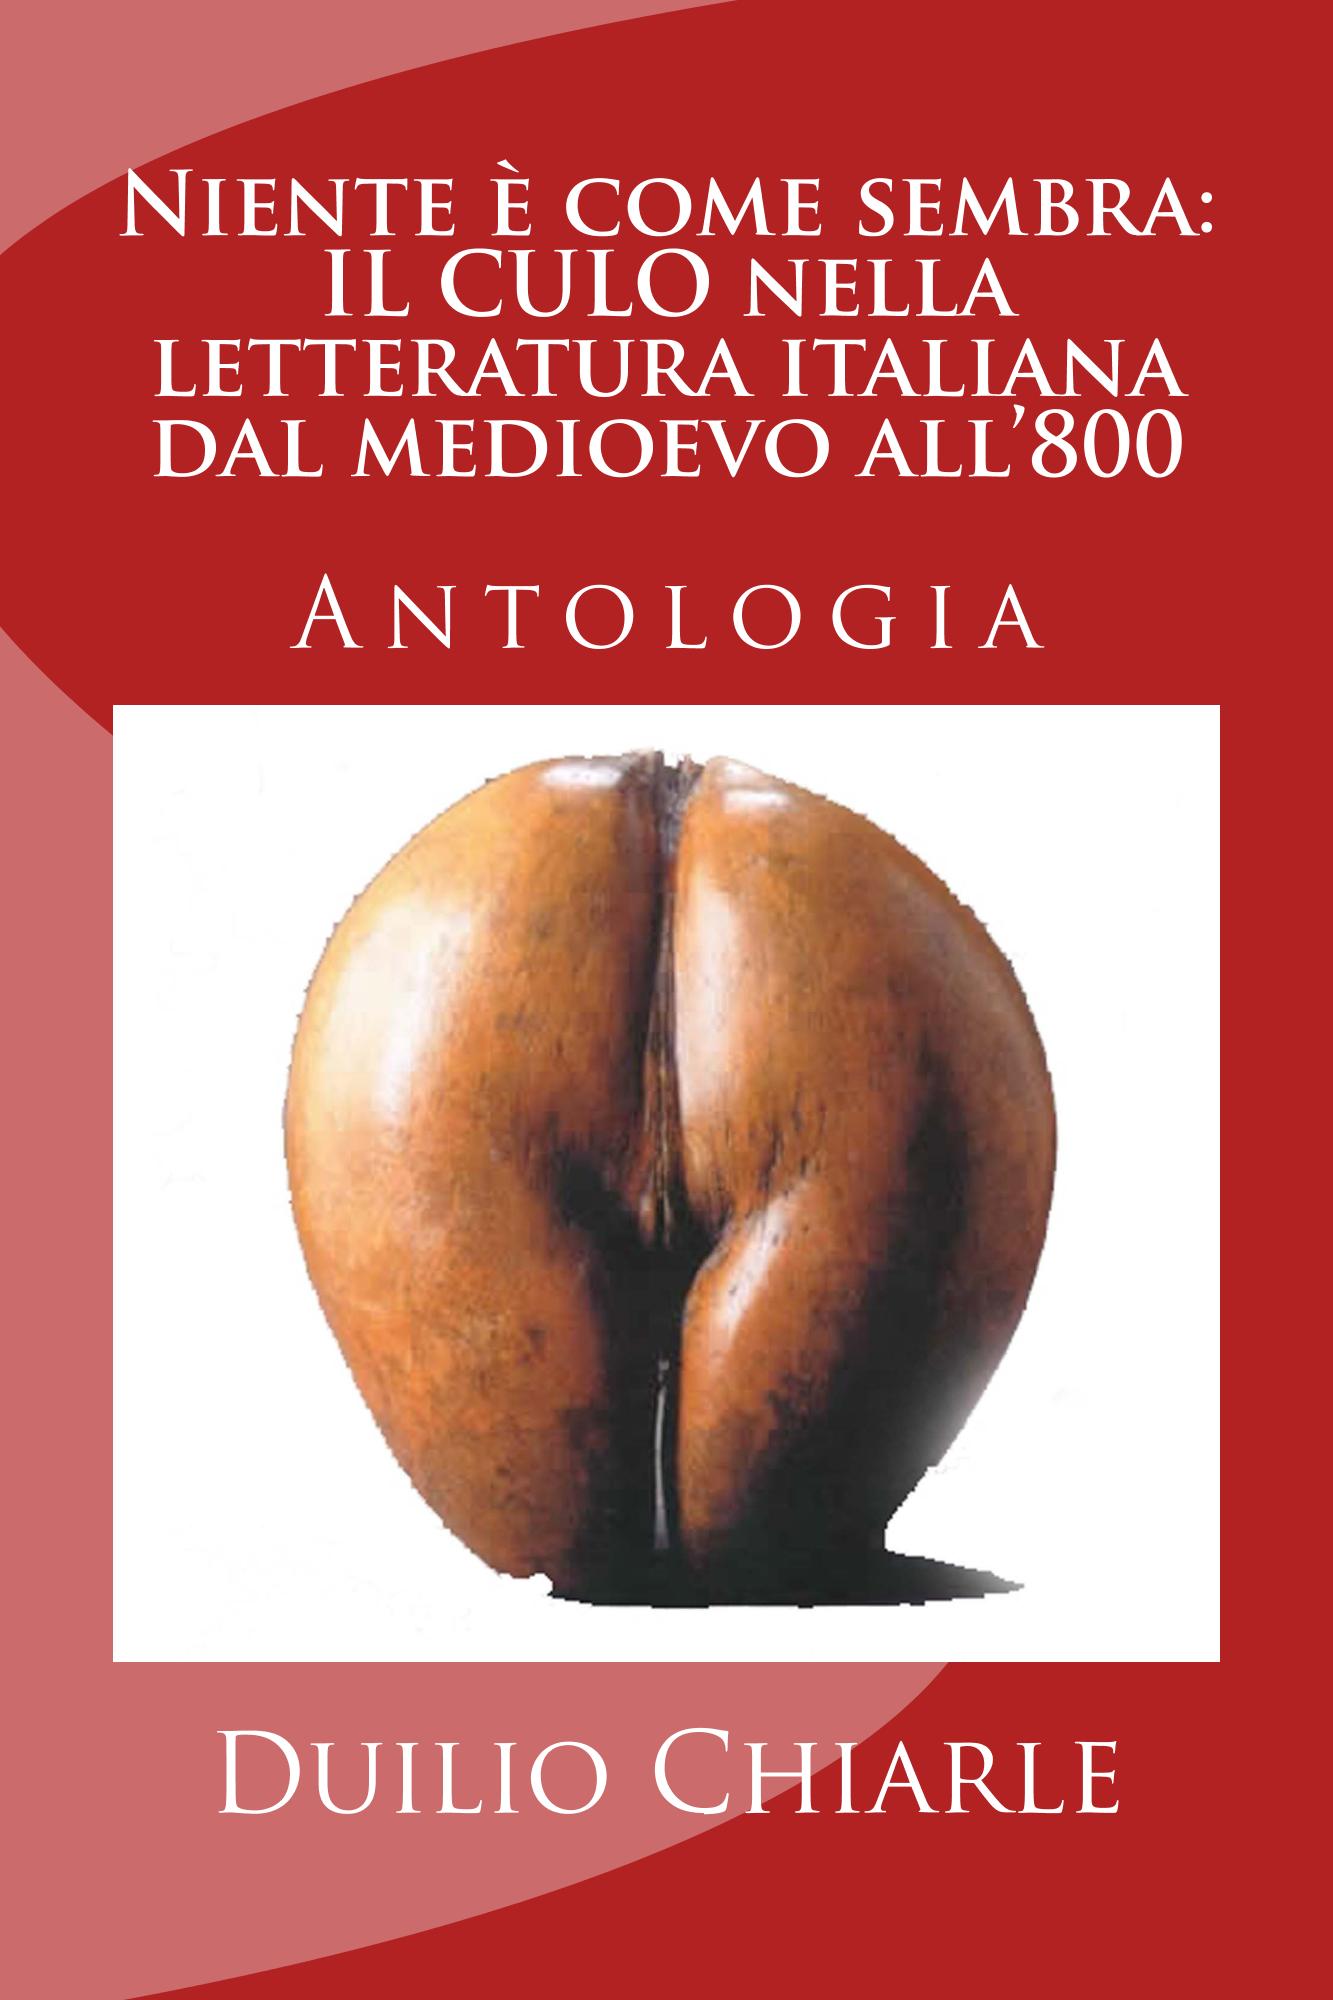 Niente è come sembra: IL CULO nella letteratura italiana dal medioevo all'800)